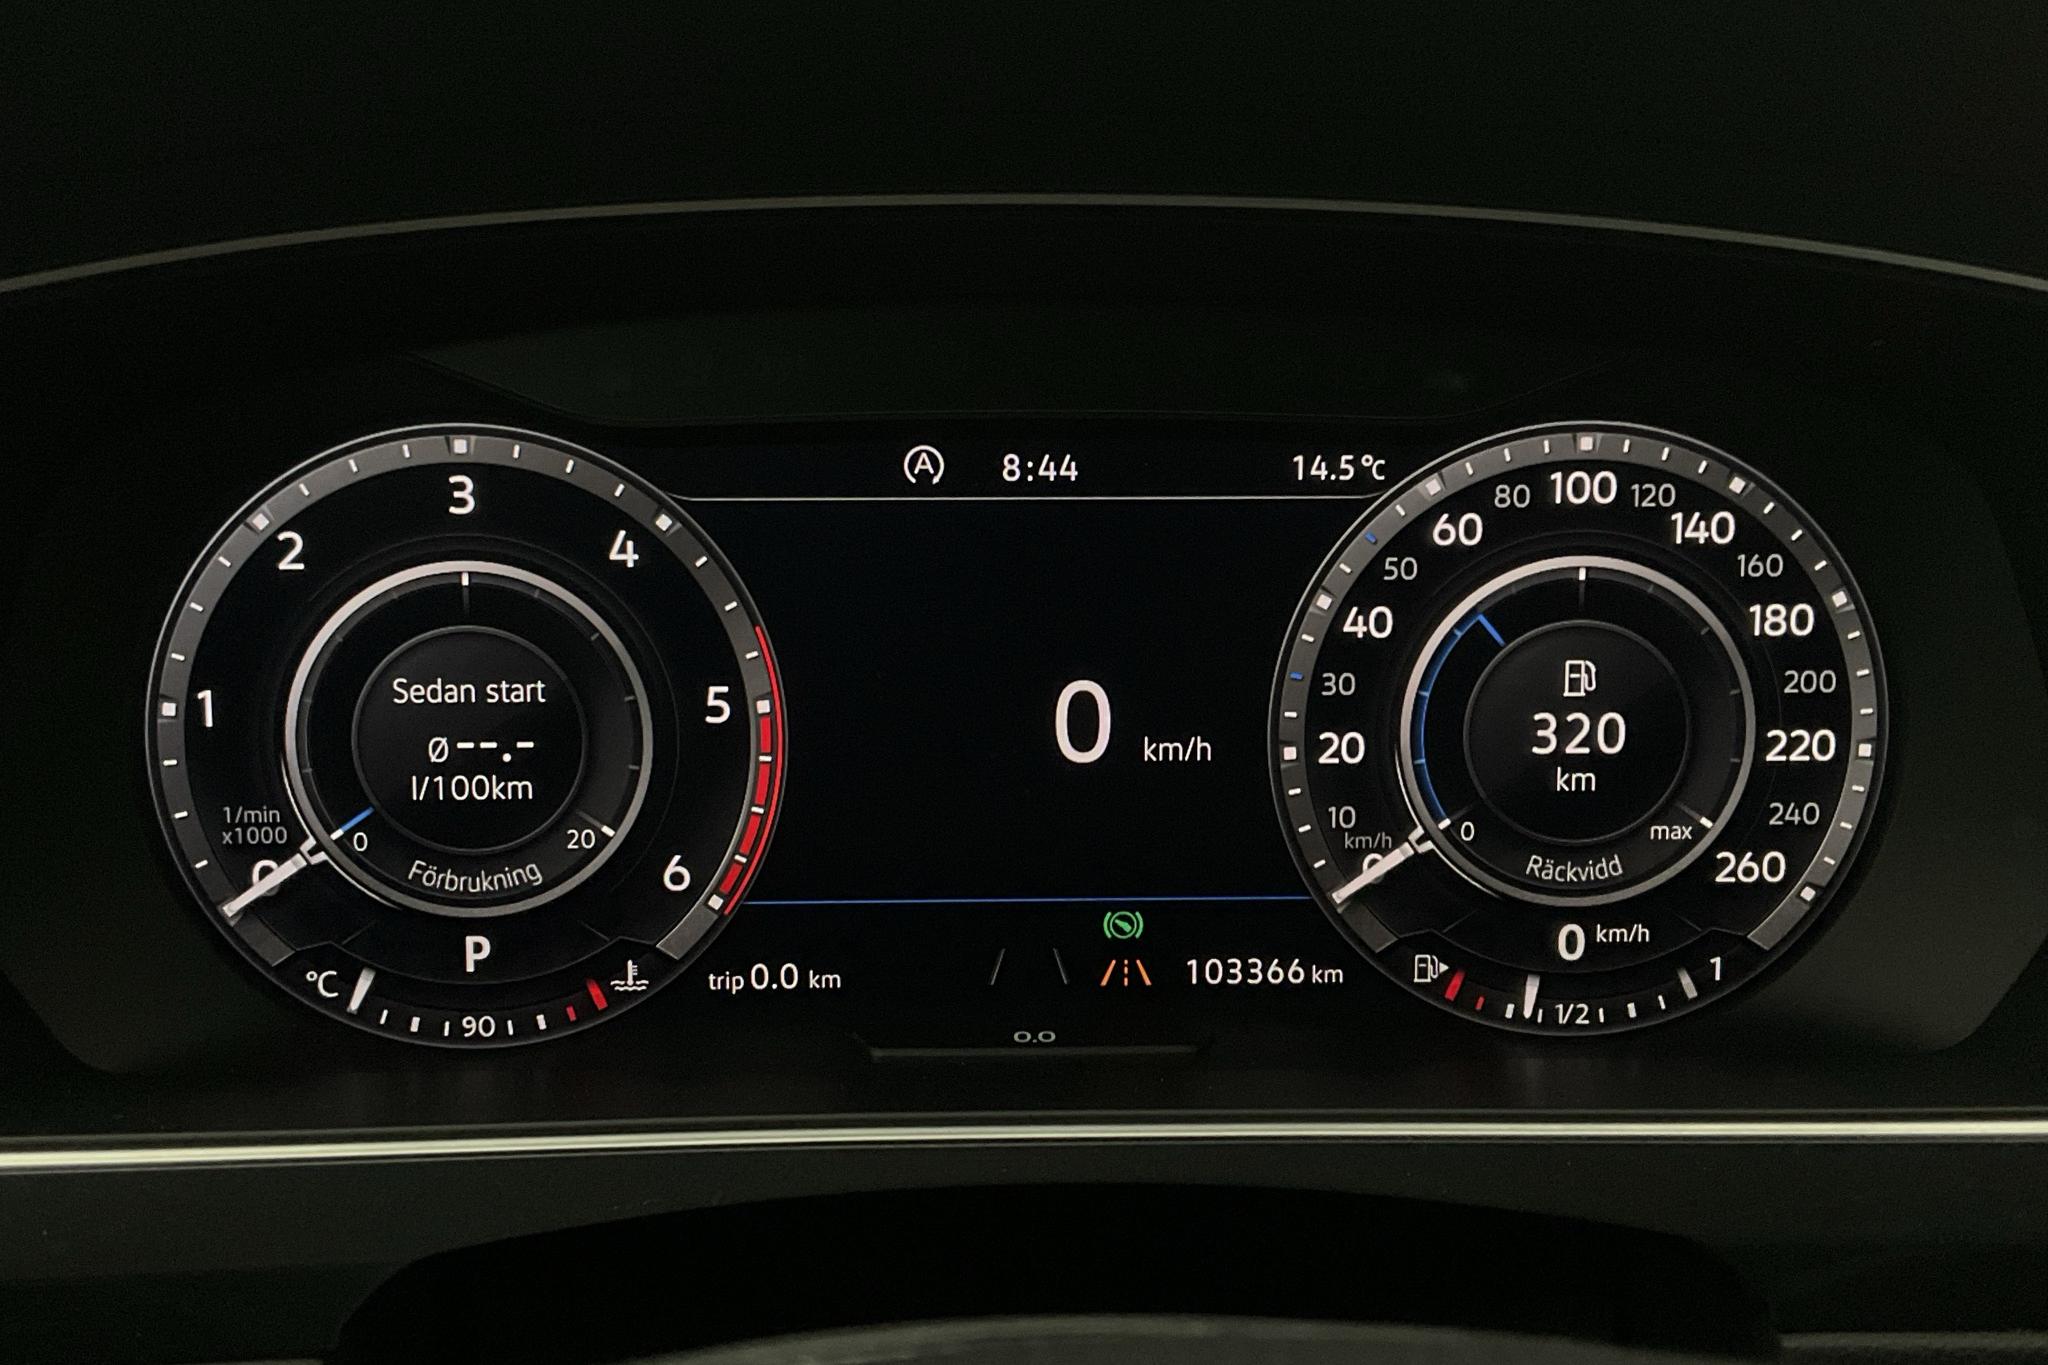 VW Tiguan 2.0 TDI 4MOTION (190hk) - 103 370 km - Automatic - white - 2019